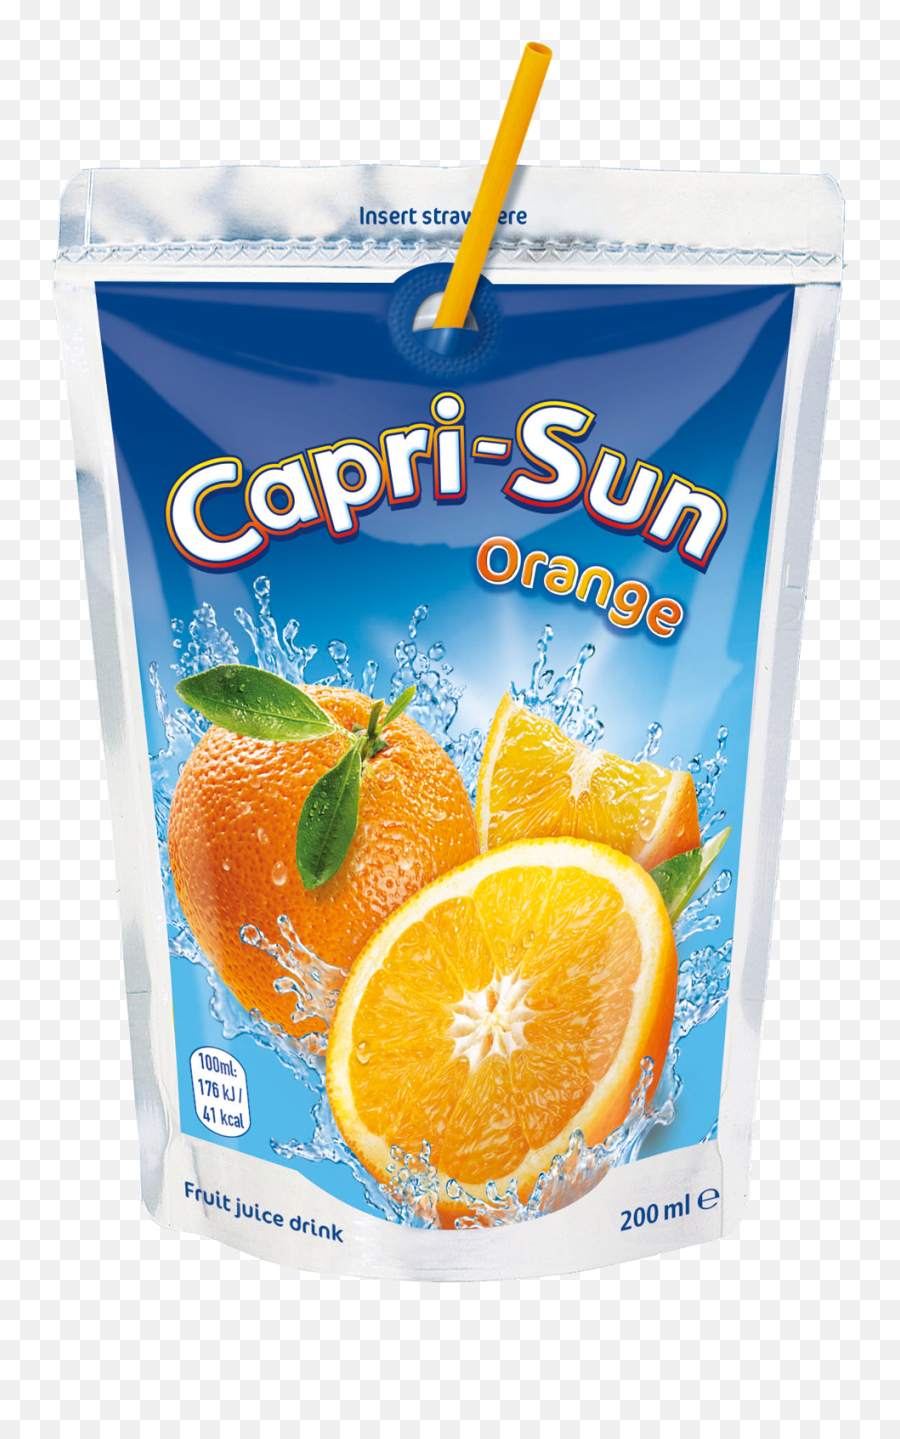 Capri Sun Orange 40 X 200ml - Capri Sun Png,Capri Sun Png